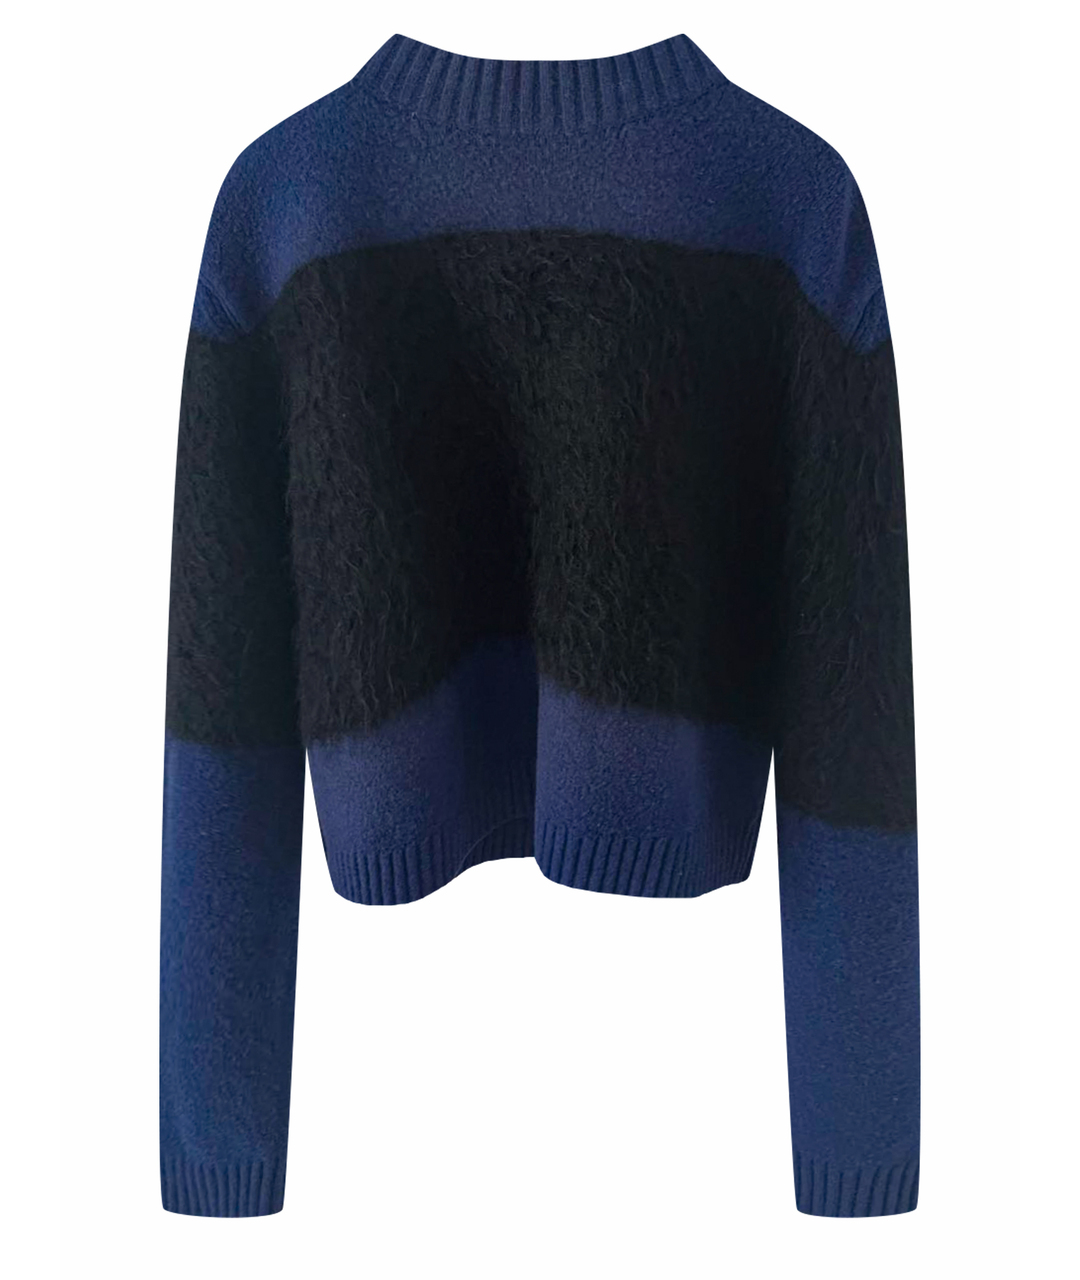 SPORTMAX Темно-синий джемпер / свитер, фото 1